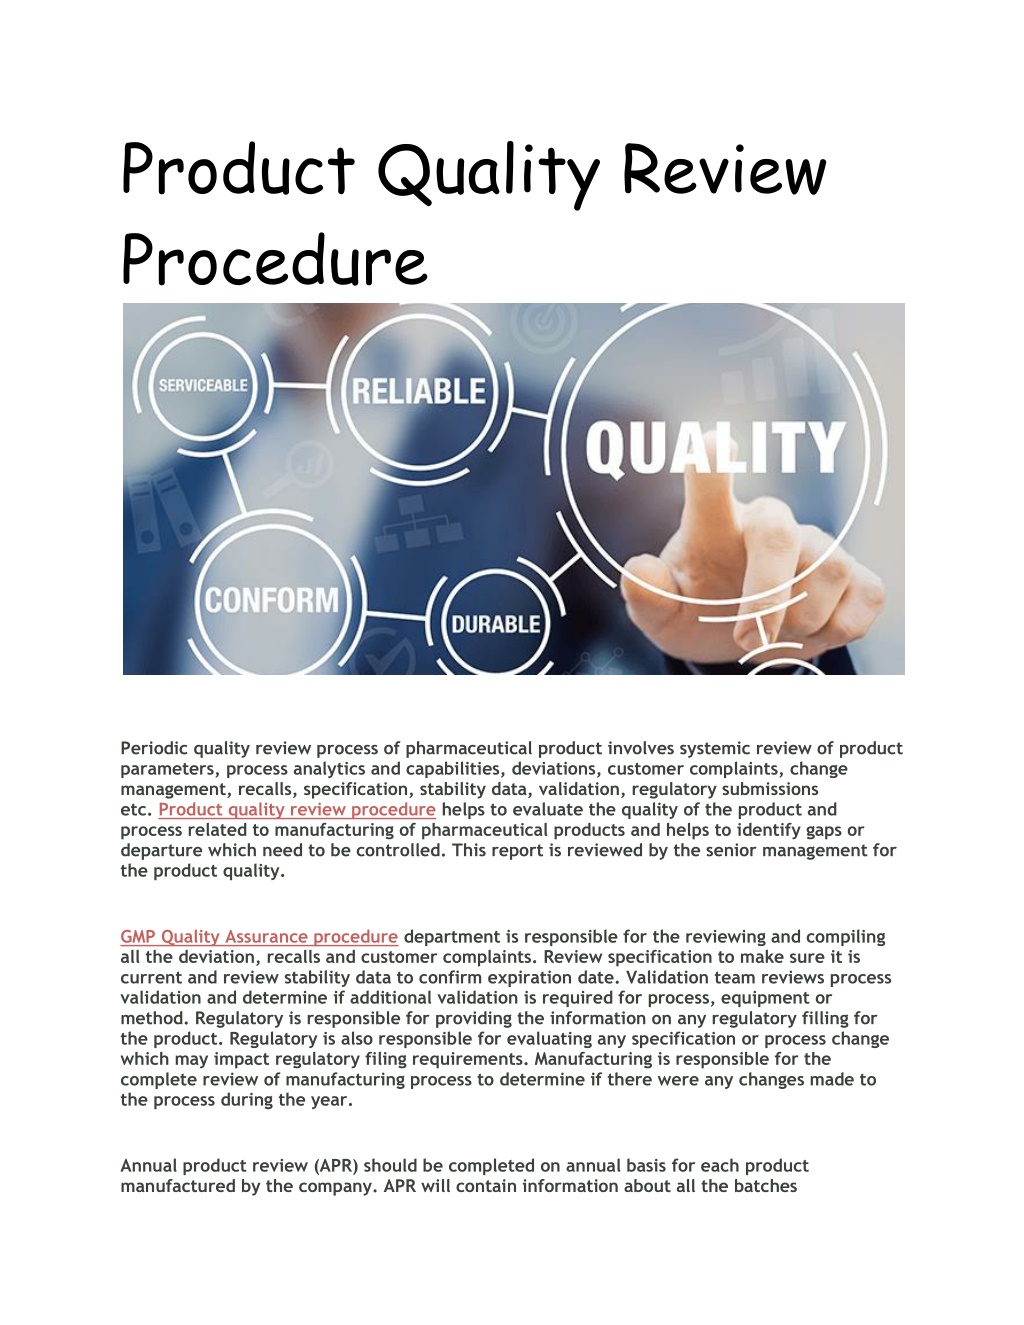 quality review presentation